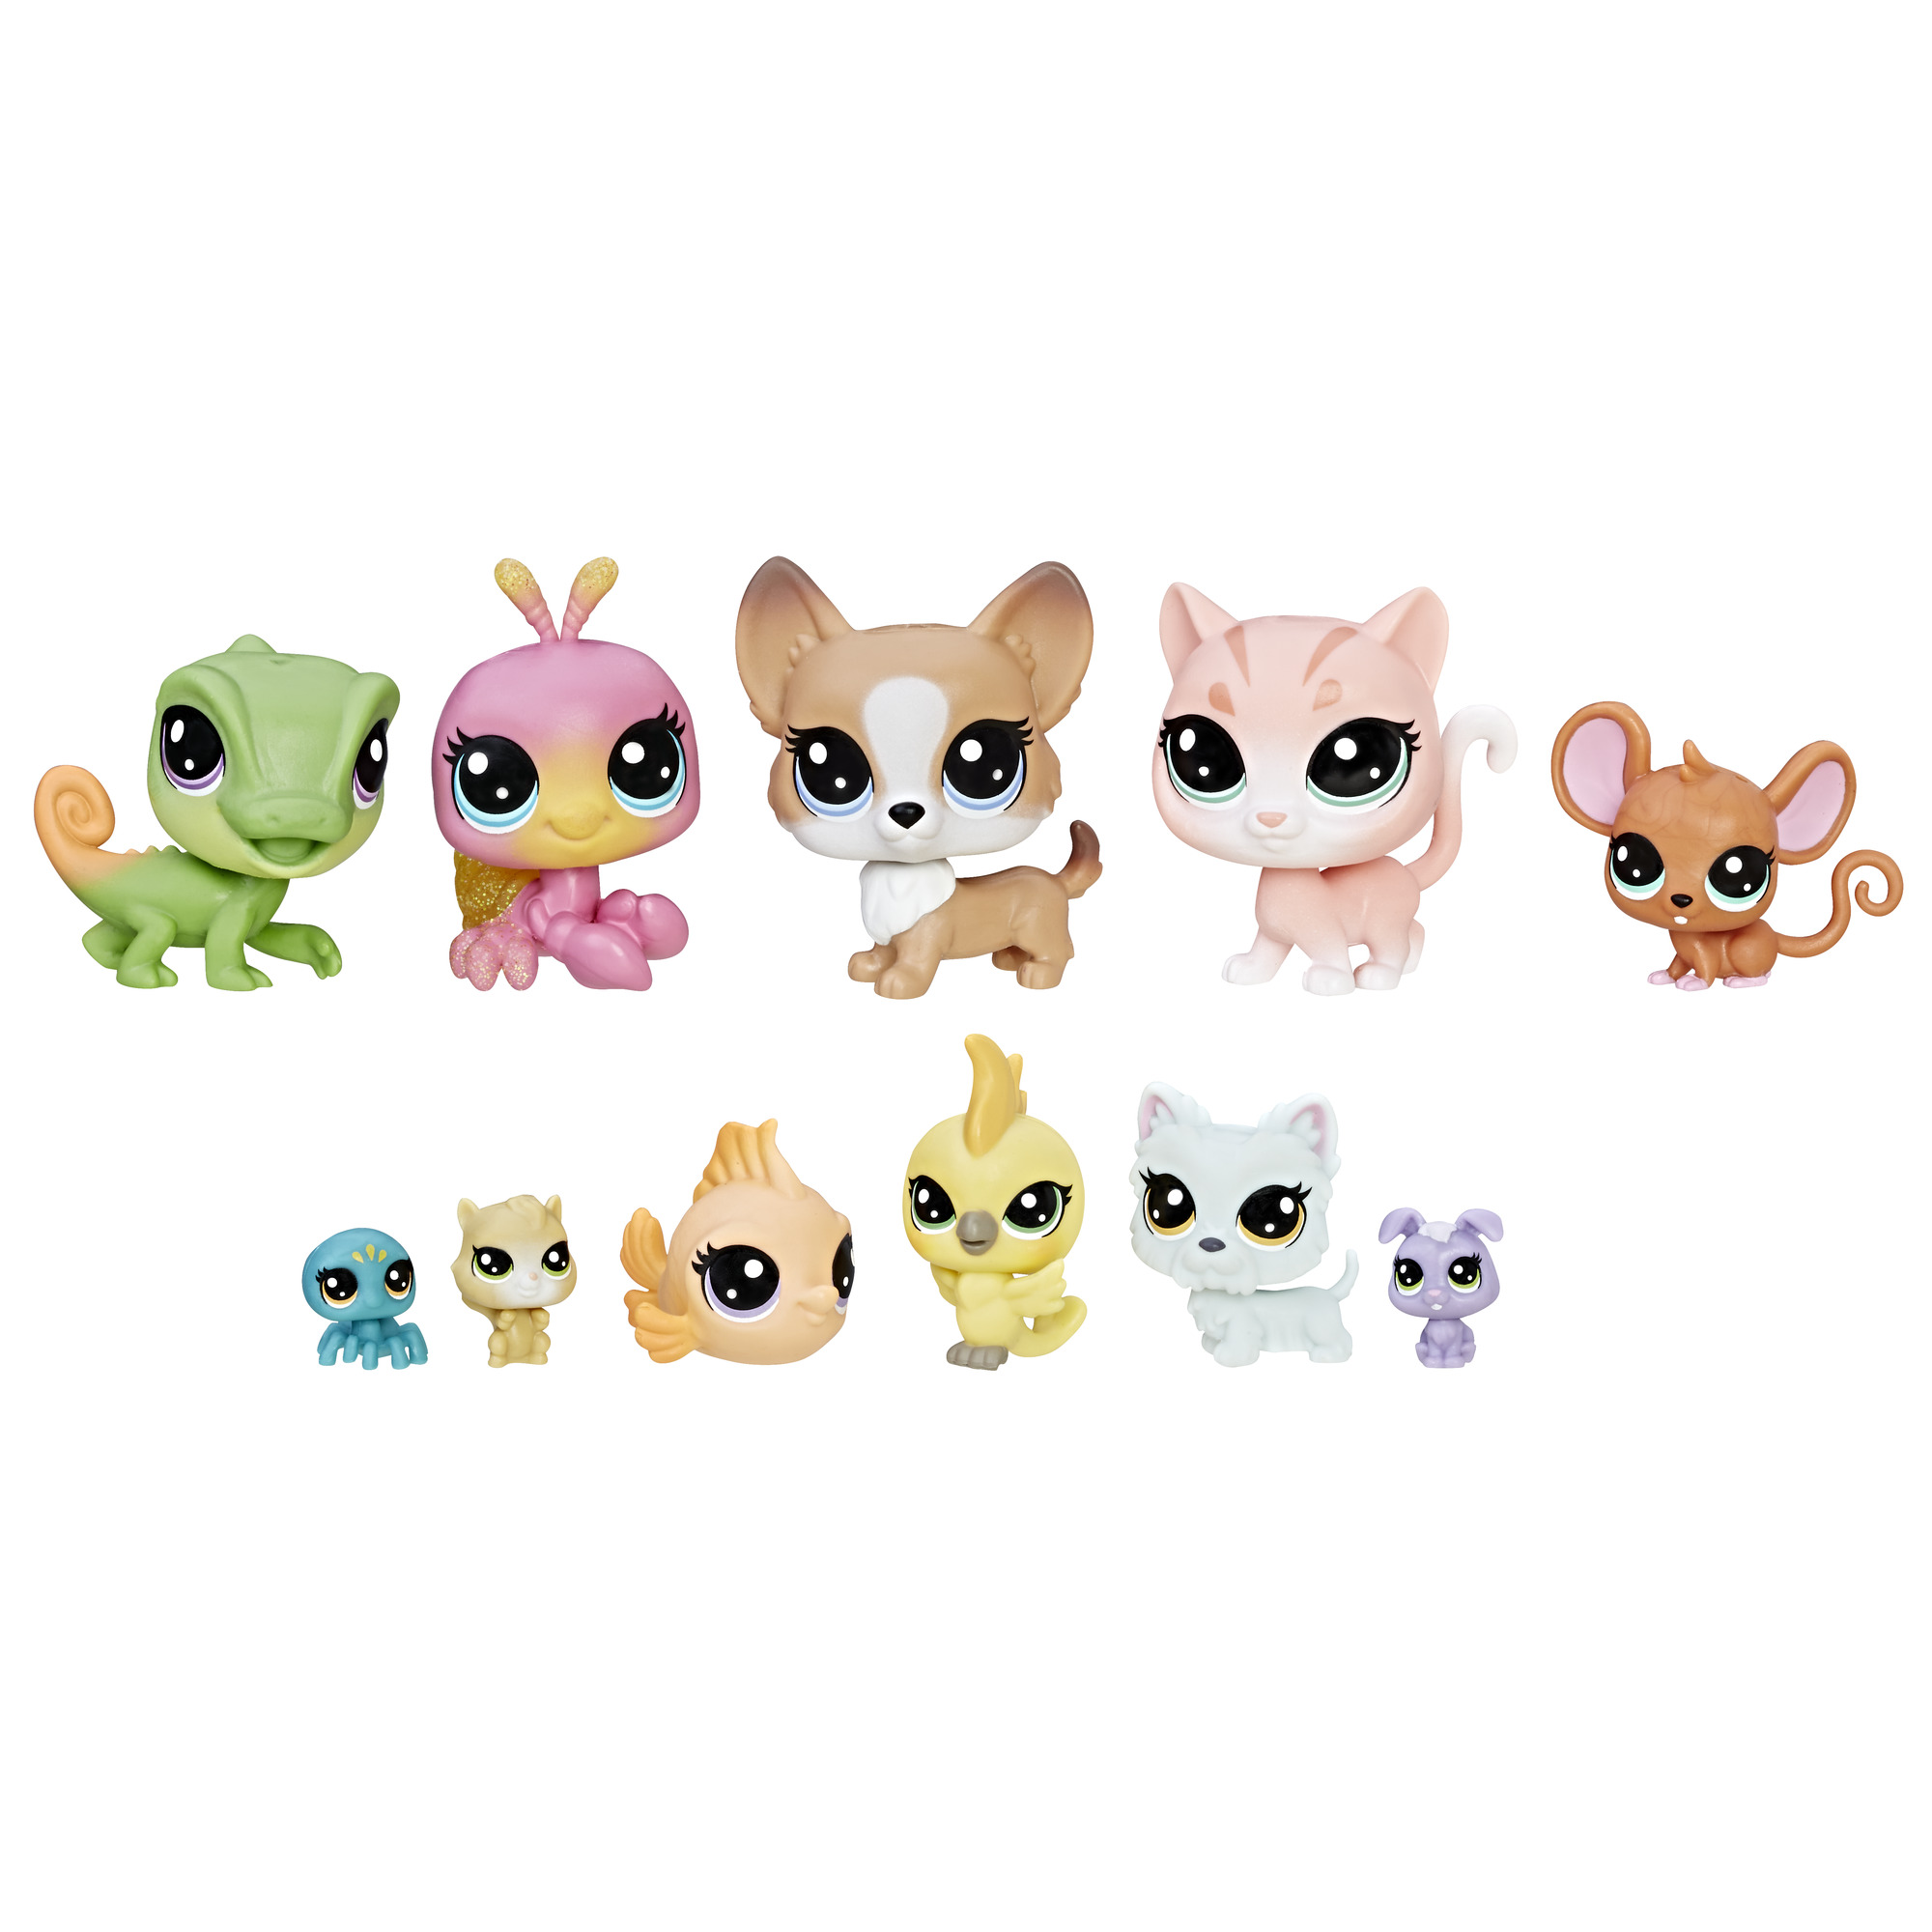 Литл петс. Игровой набор Littlest Pet shop коллекция петов b9343. Pet shop 1 коллекция лпс. Hasbro Littlest Pet shop. Hasbro LPS петы.